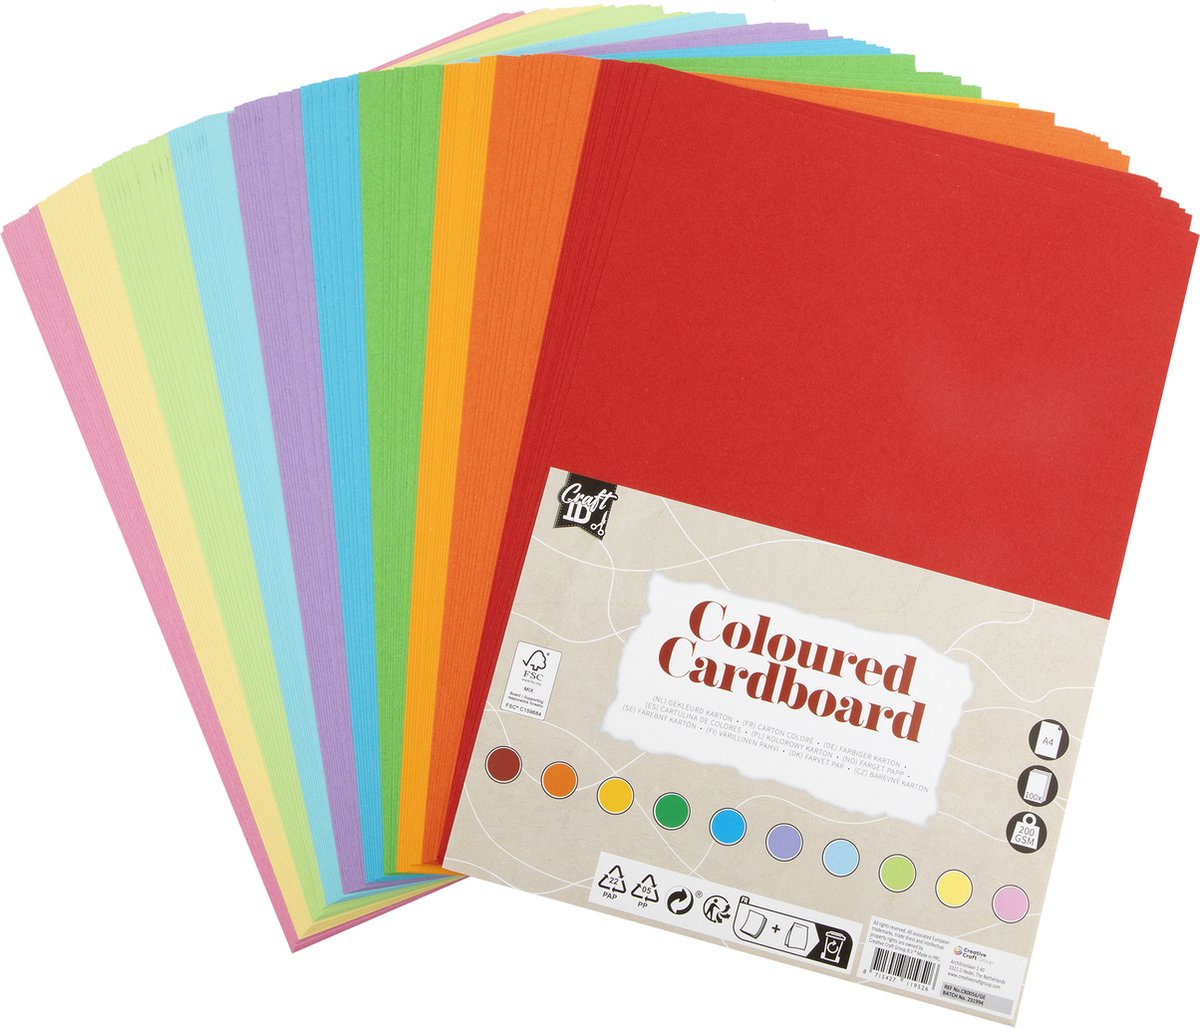 Craft ID Gekleurd Karton - A4 Formaat - 100 Vellen - 200grams Papier - 10 Verschillende Kleuren - Knutselen - Hobbykarton - Duurzaam Papier - Craft ID